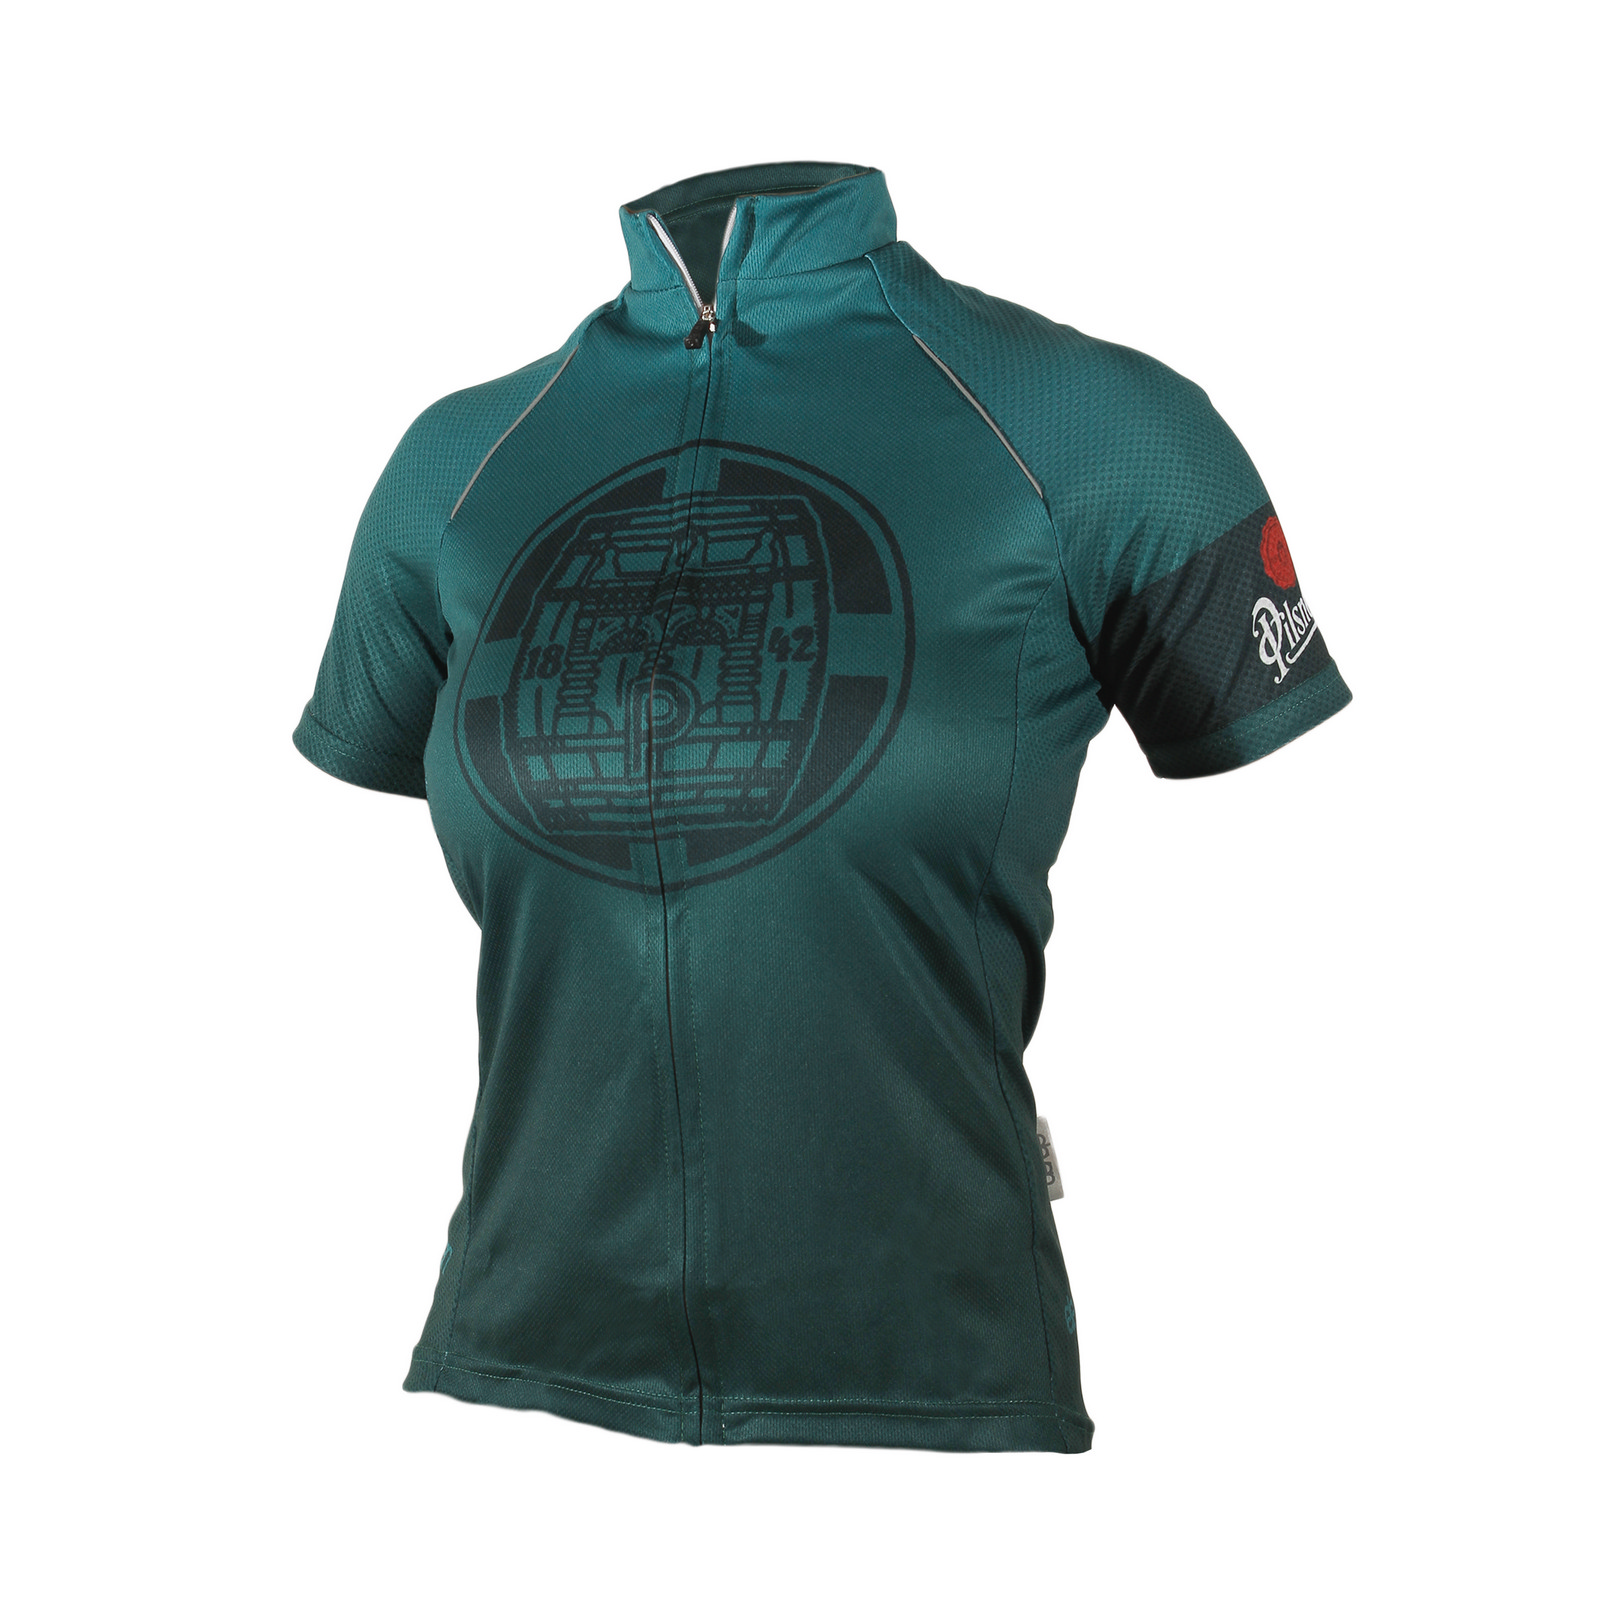 Women’s Pilsner Urquell cycling jersey dark green